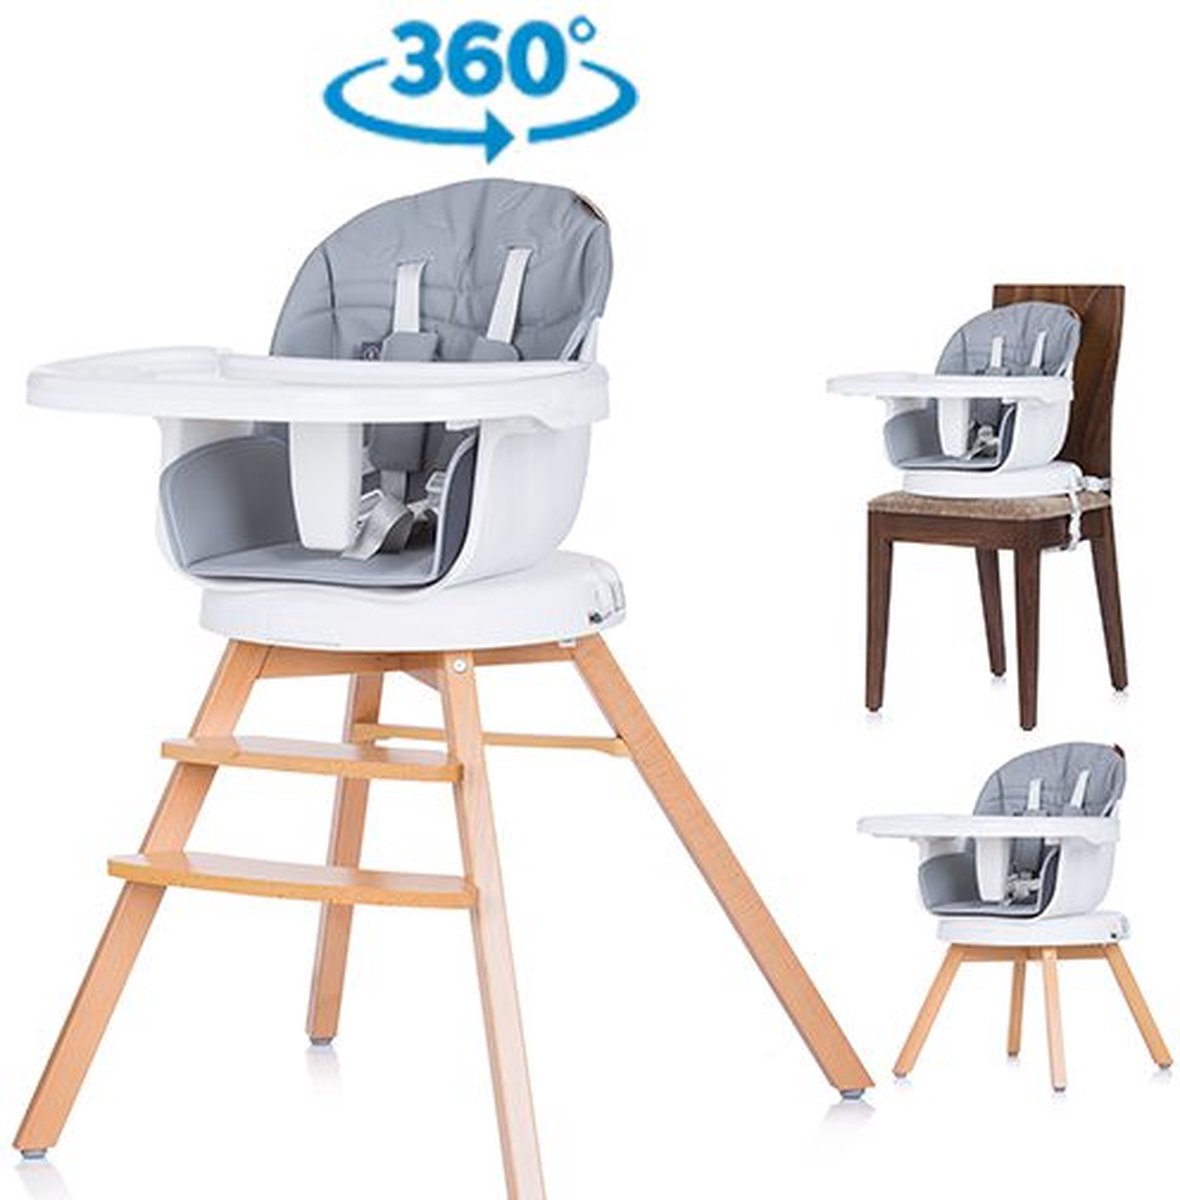 Kinderstoel Rotto grijs platina, 3in1 & 360 graden draaibaar